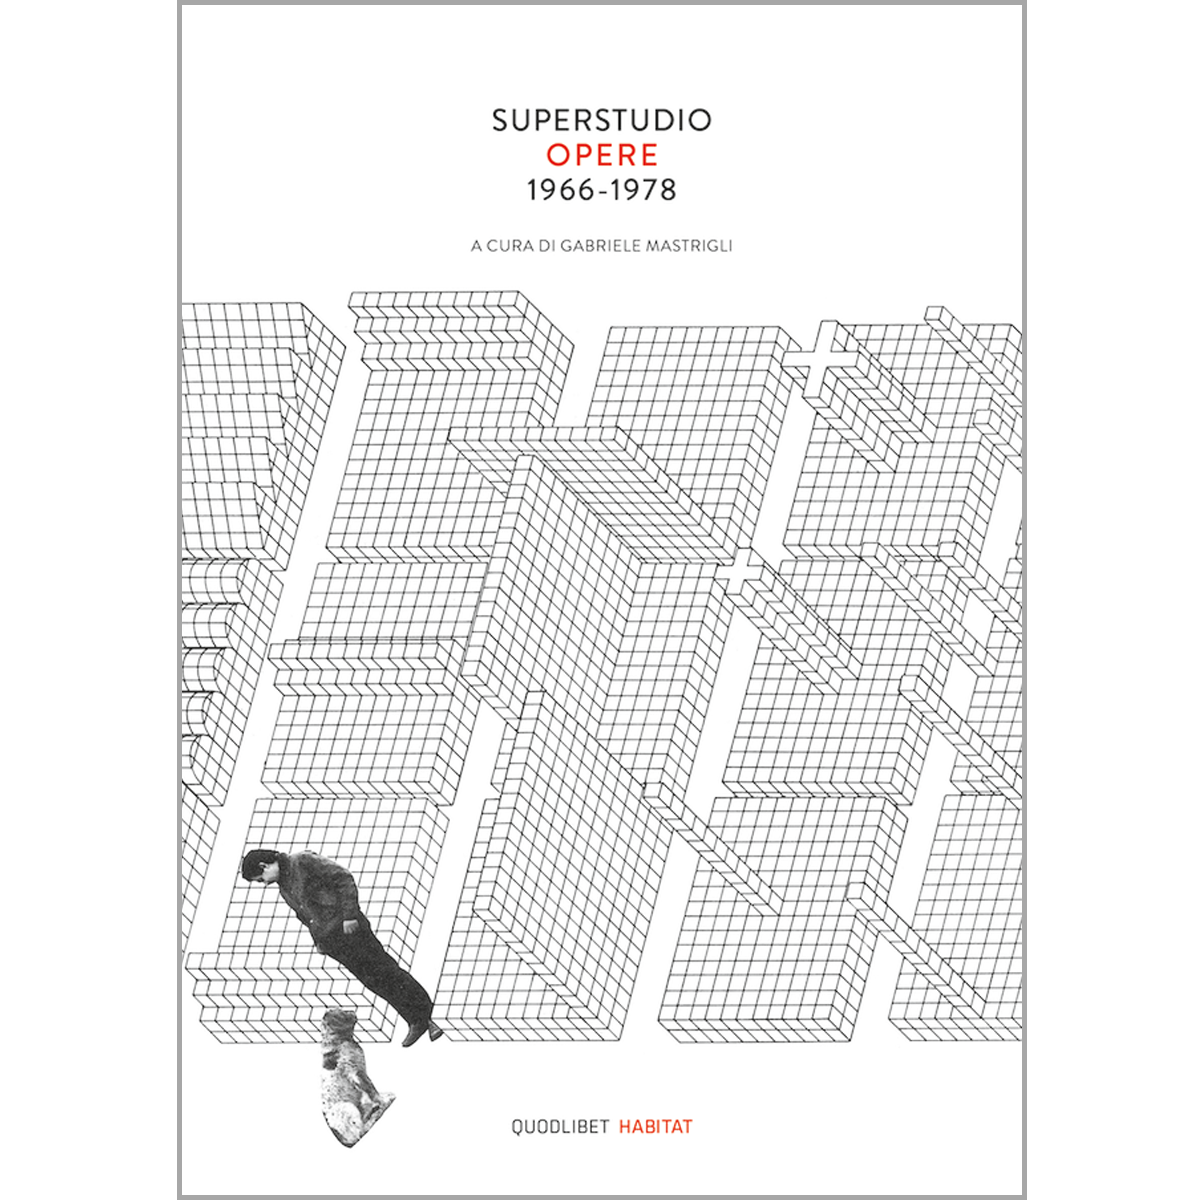 Superstudio Opere 1966-1978